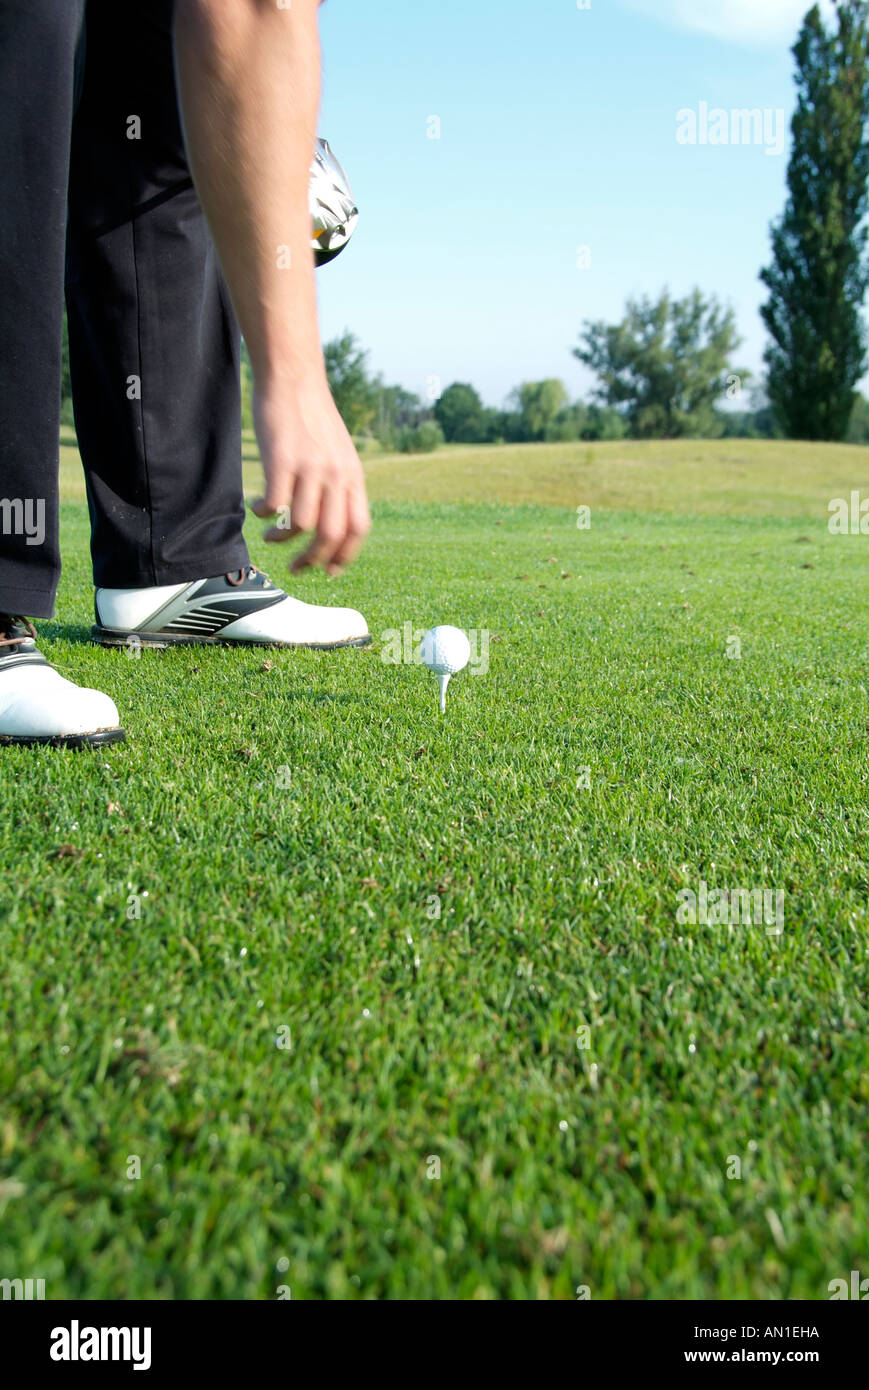 Golf Golf Golf, close-up d'une balle de golf sur un raccord en t sur le greenfee Banque D'Images